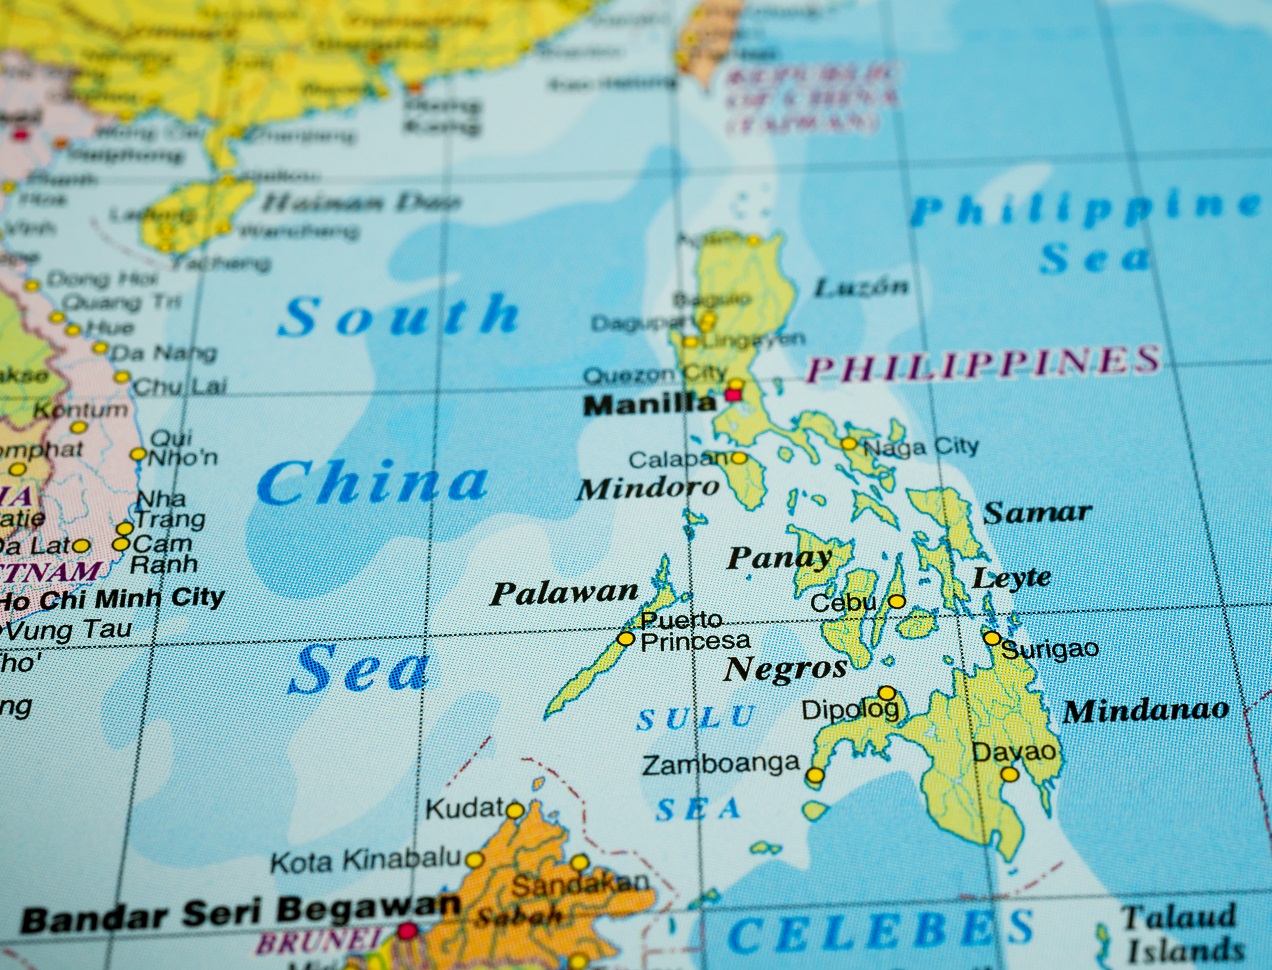 Филиппина на английском. Филиппины на карте. Давао Филиппины на карте. Минданао Филиппины на карте.